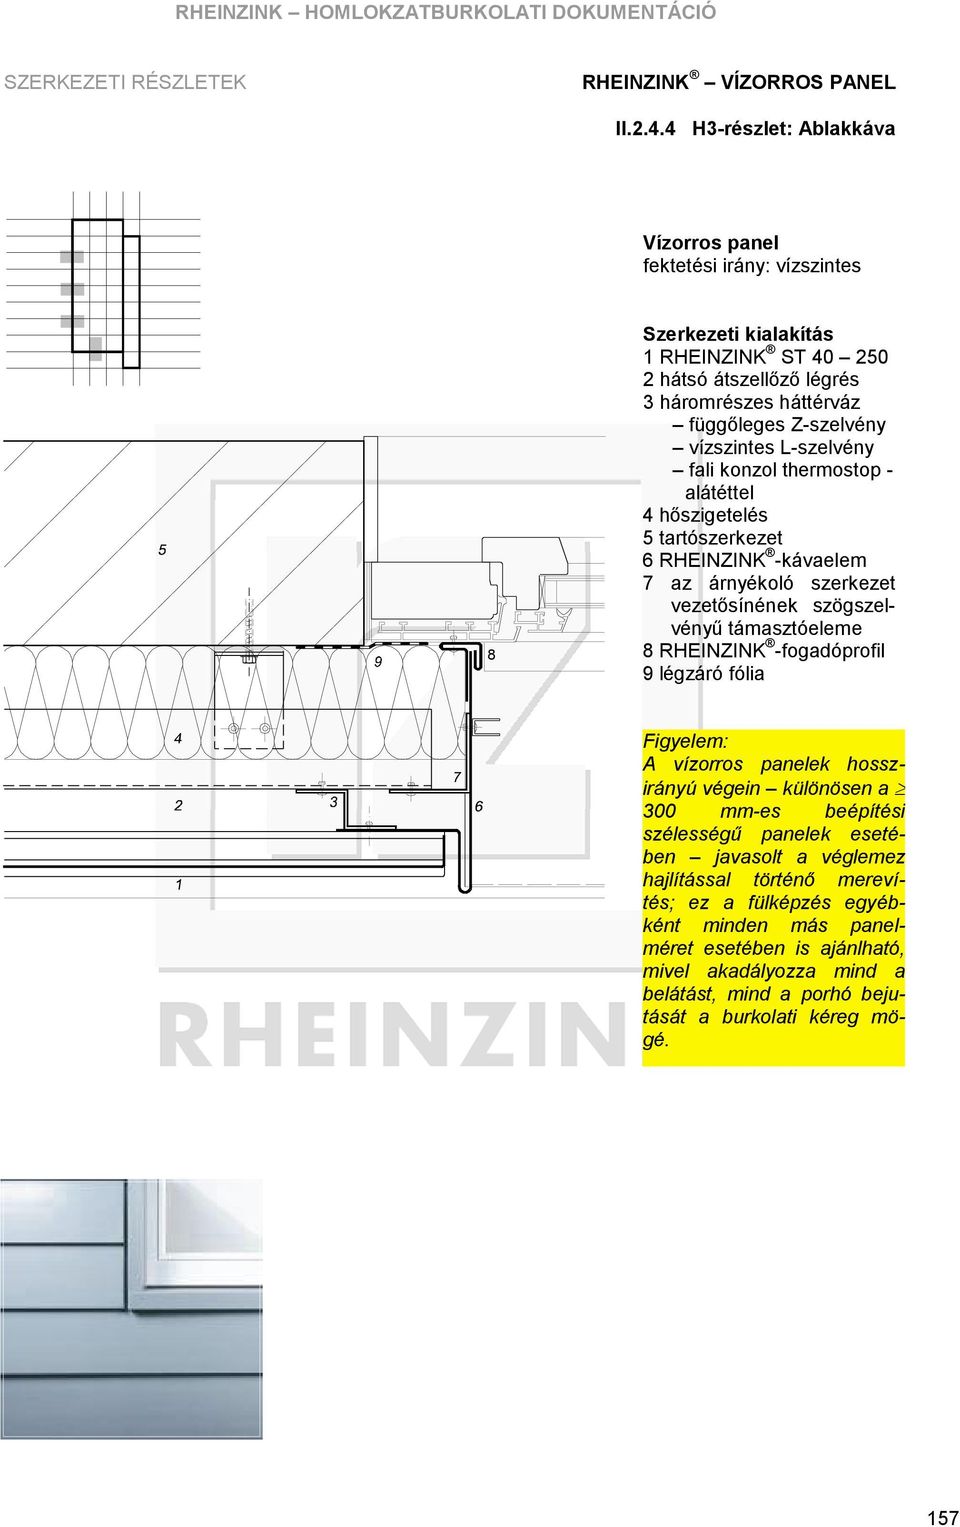 RHEINZINK -fogadó profil 9 légzáró fó lia A vízorros panelek hosszirá nyú végein kü lö nö sen a 300 mm-es beépítési